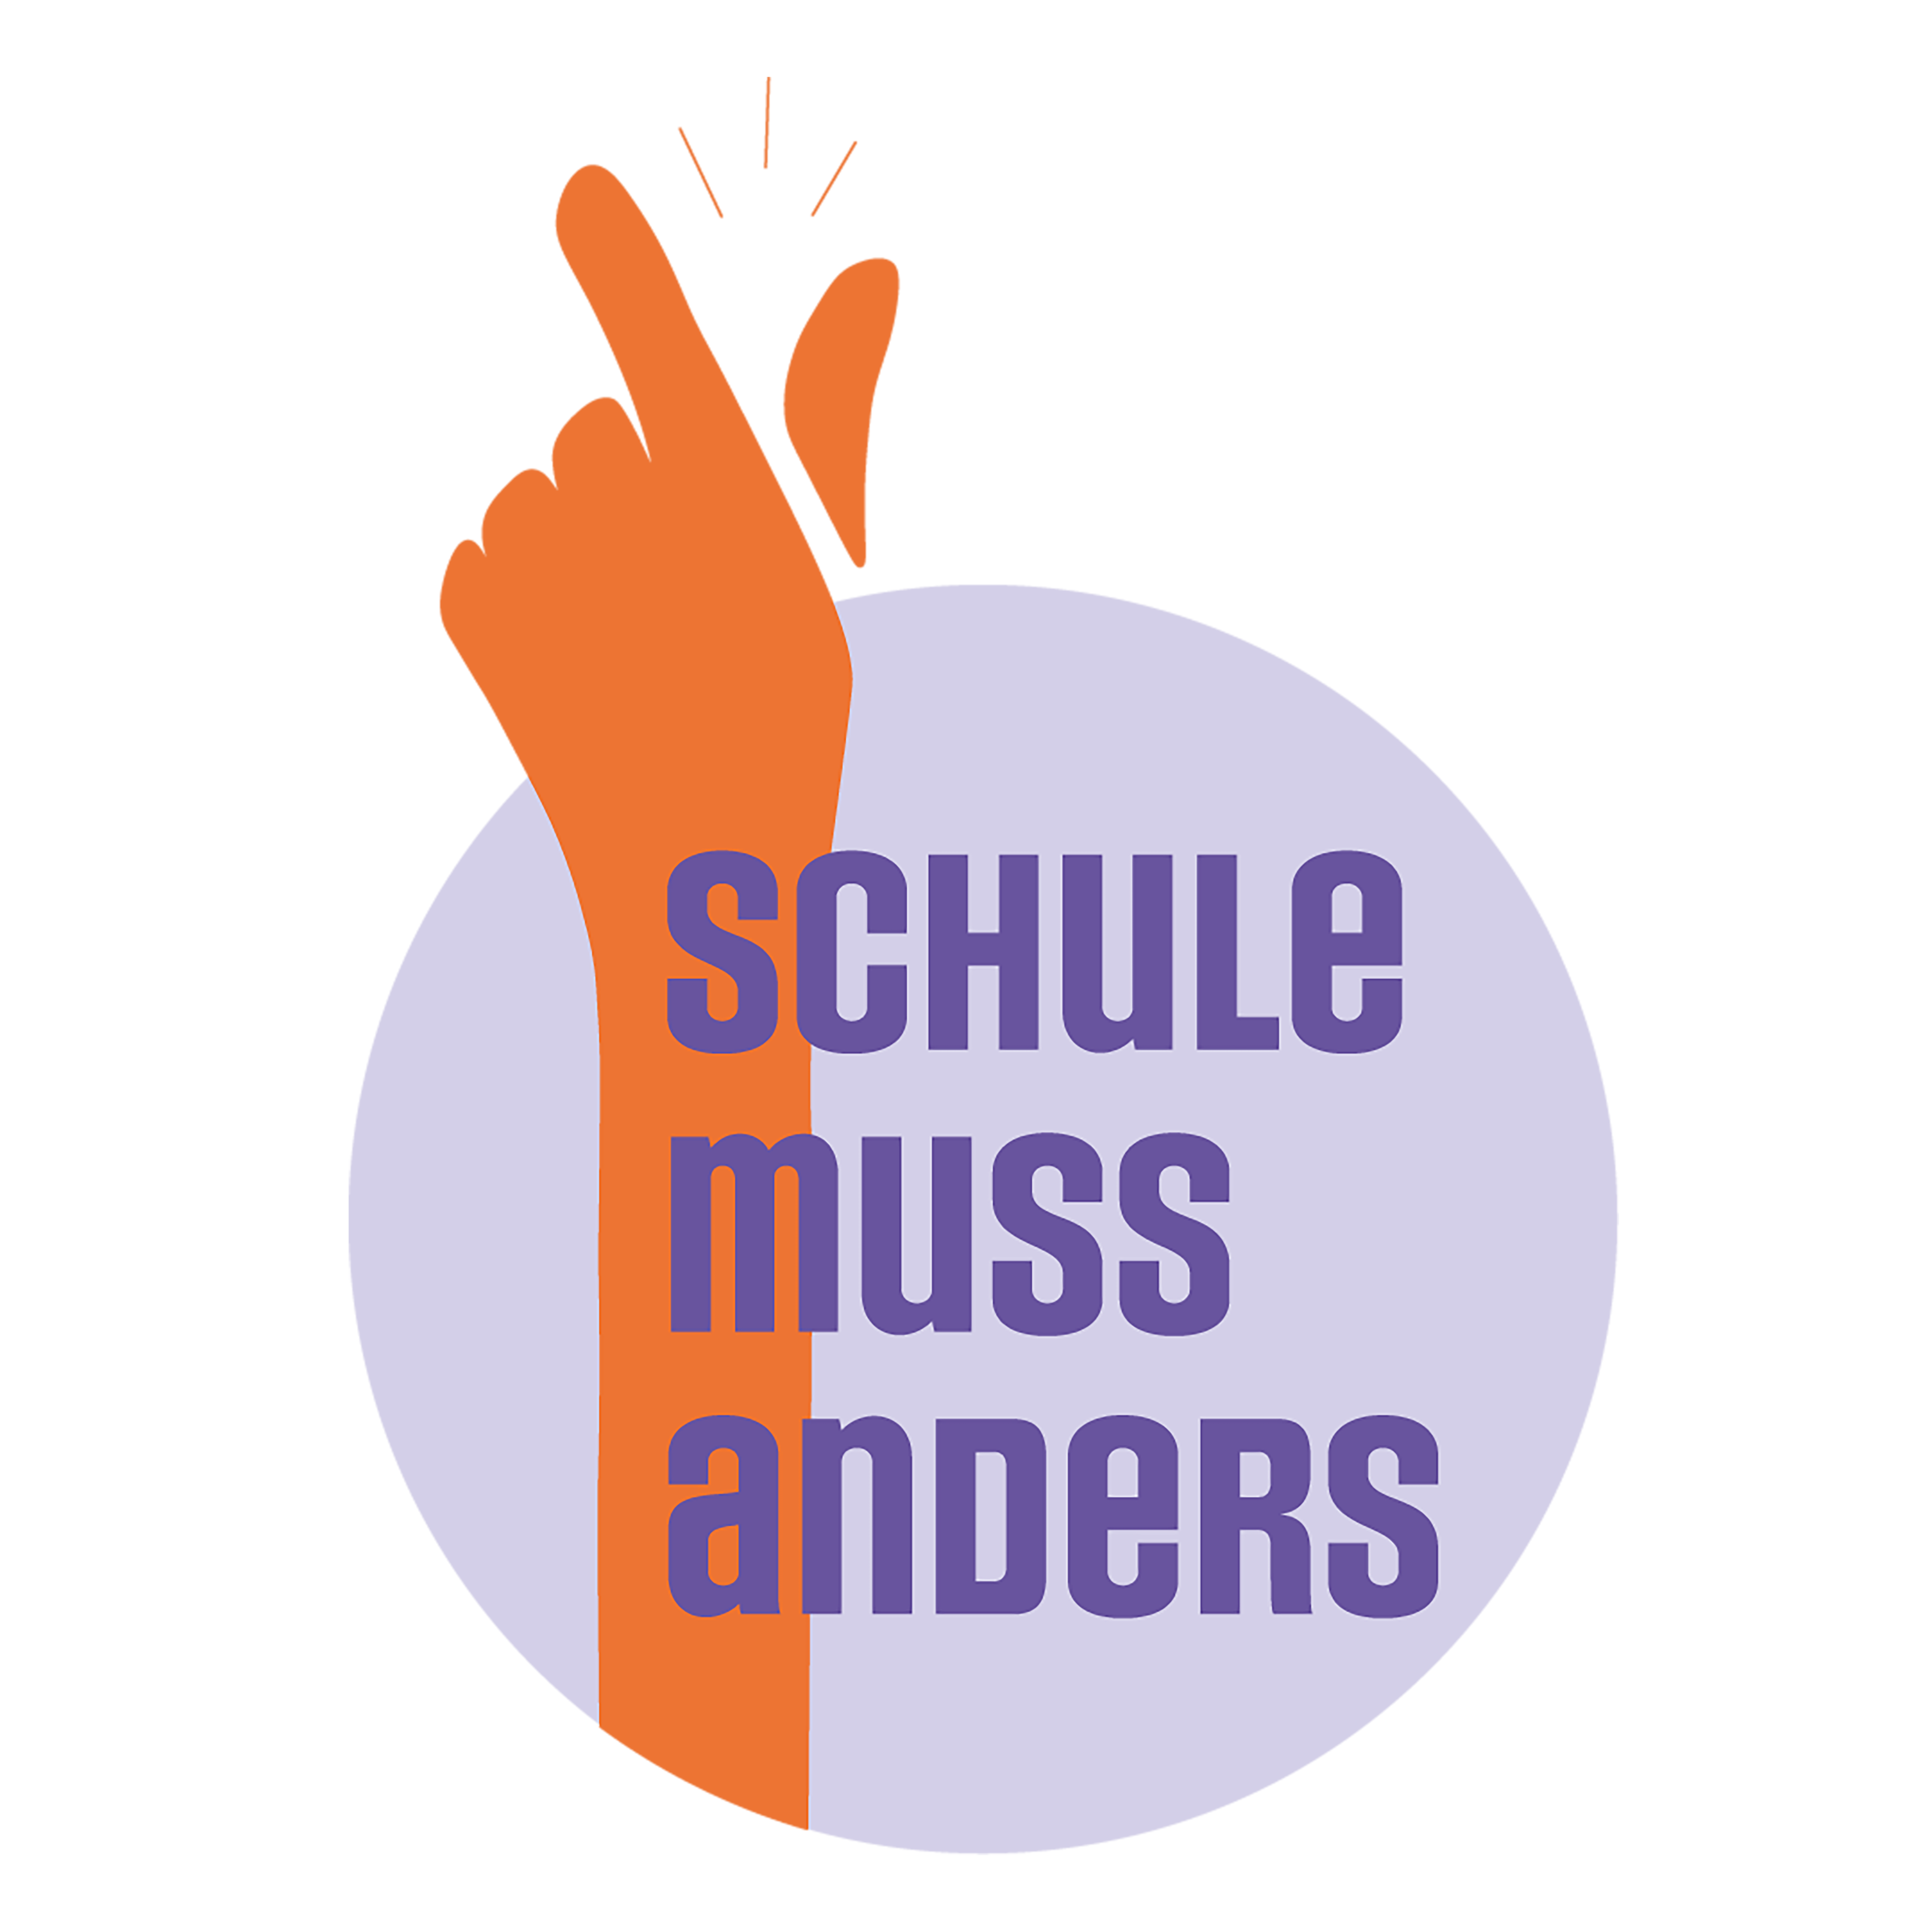 Die offene Berliner Kampagne "Schule muss anders" ruft in knapp 30 Städten in allen Bundesländern zu einem Bildungsprotesttag auf.